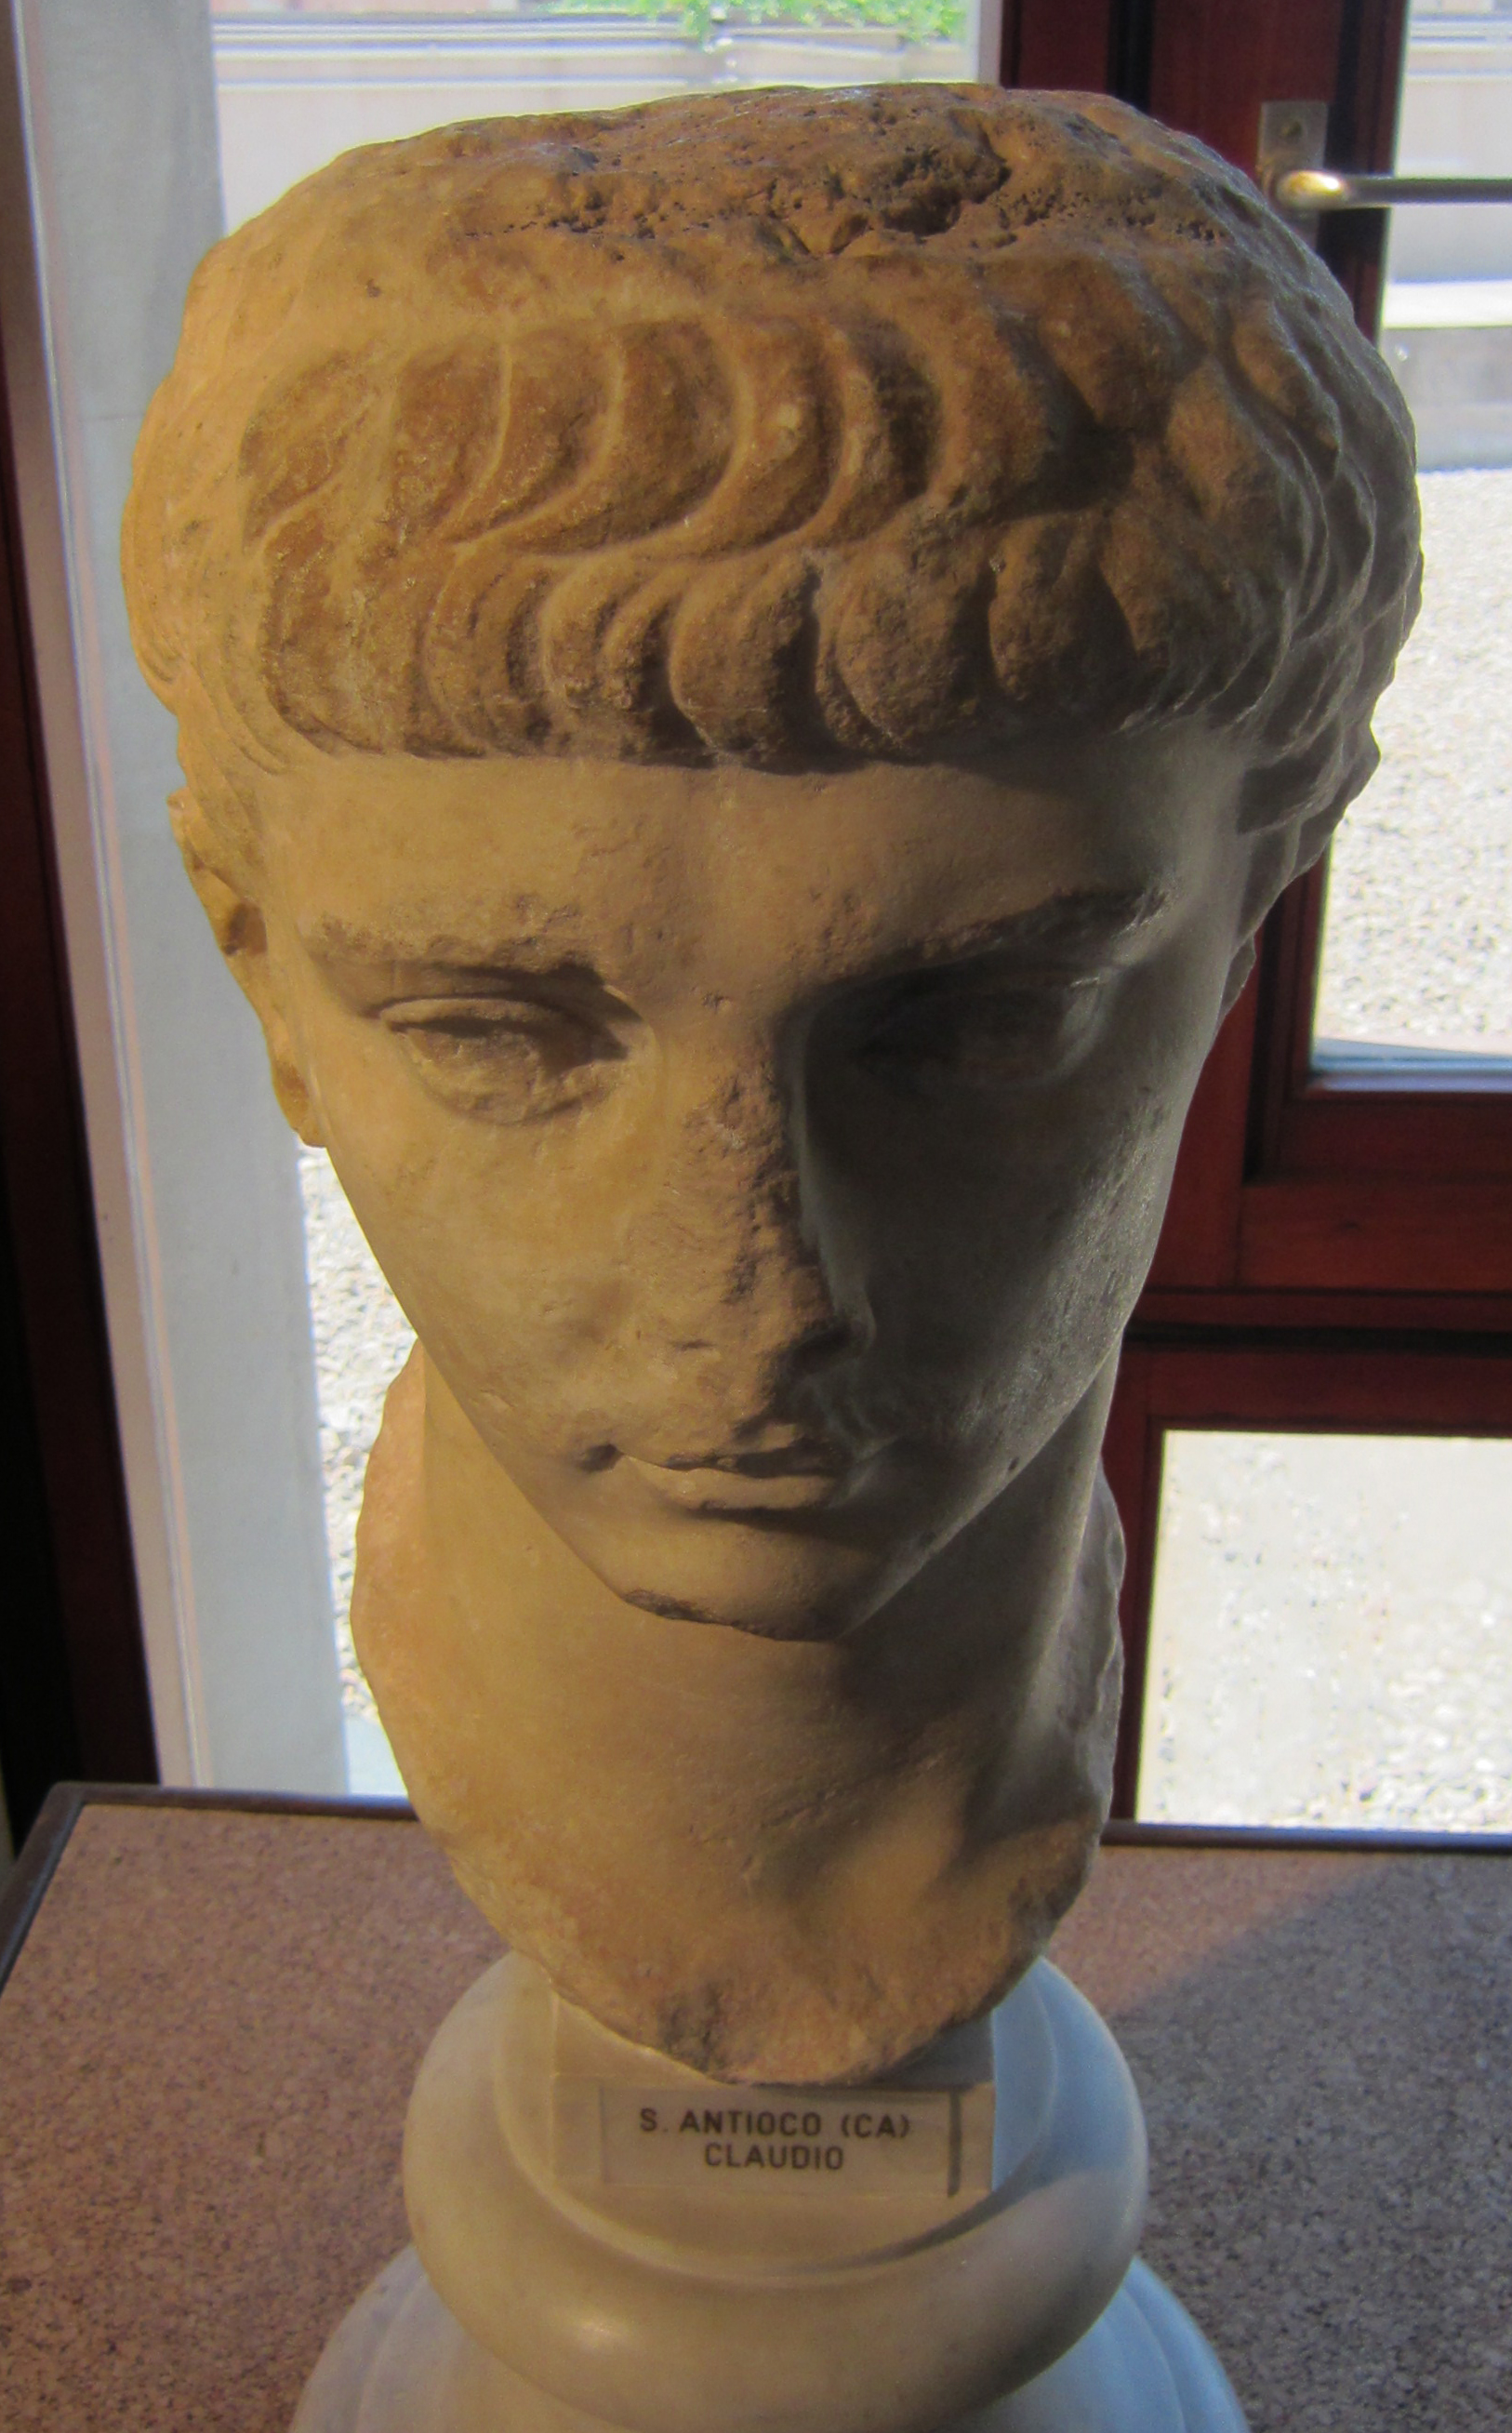 ritratto di Claudio (ritratto, statua iconica, ritratto di Claudio tipo Kassel) - periodo romano (inizio Eta' di Claudio)